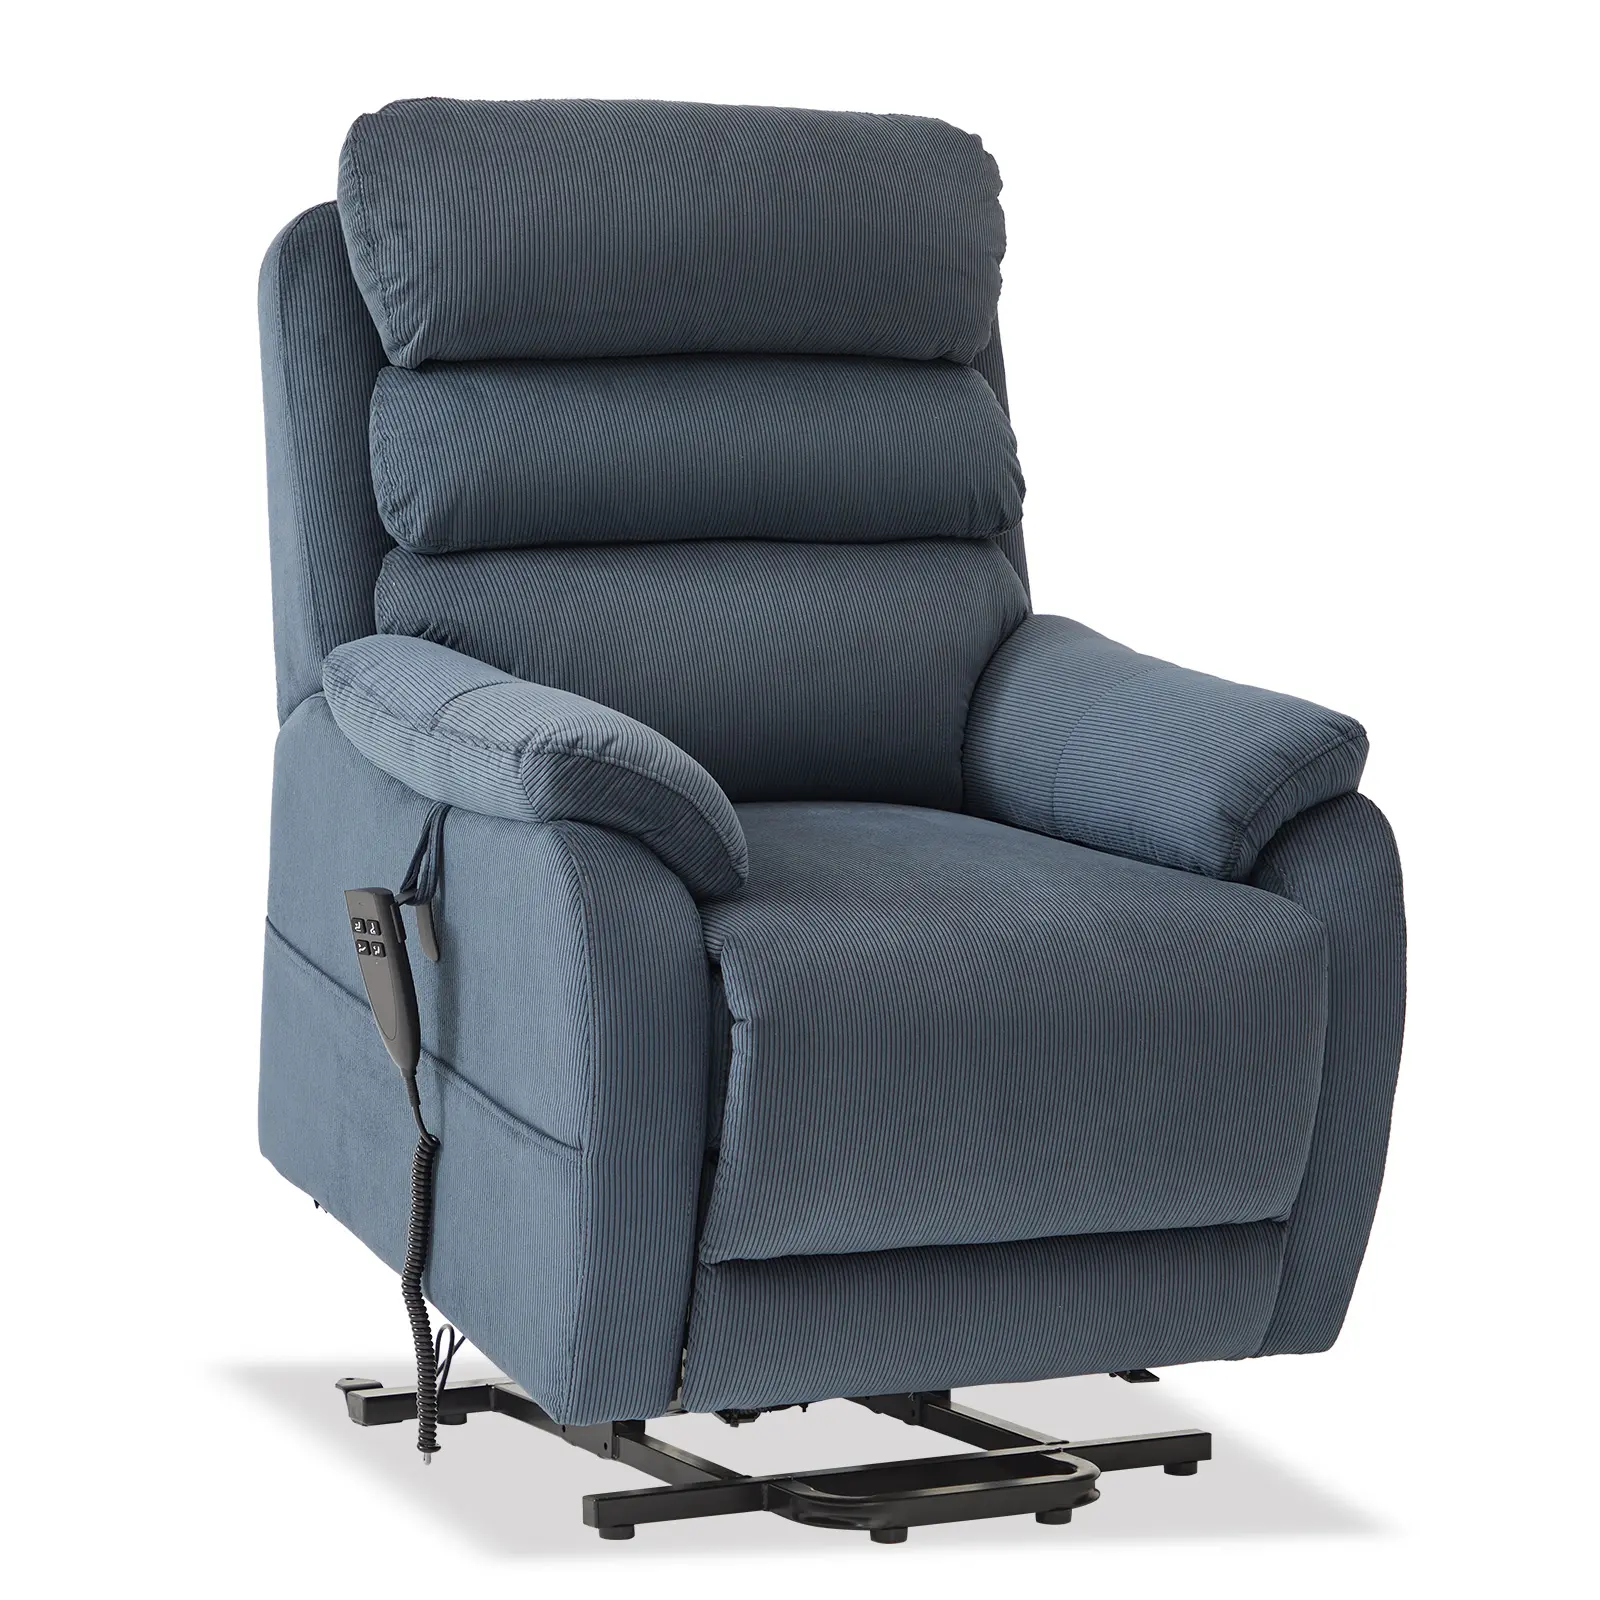 CJSmart Amazon Schlussverkauf Chenille Stoff Wohnzimmer Power Lift Stuhl Leg flat Liegesessel Stuhl für Ältere